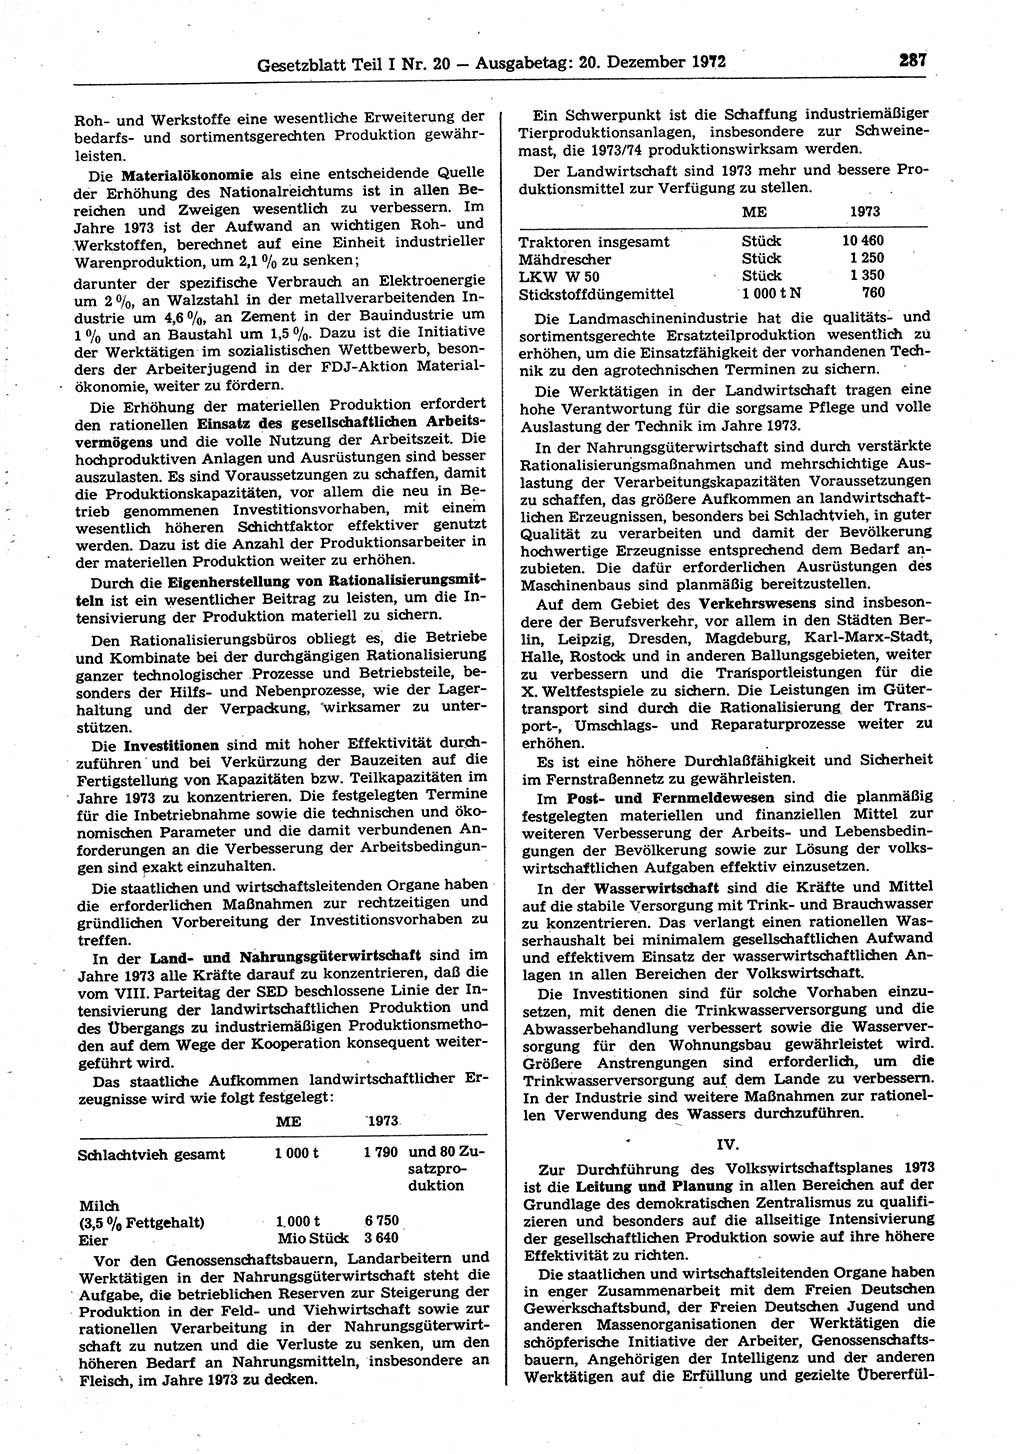 Gesetzblatt (GBl.) der Deutschen Demokratischen Republik (DDR) Teil Ⅰ 1972, Seite 287 (GBl. DDR Ⅰ 1972, S. 287)